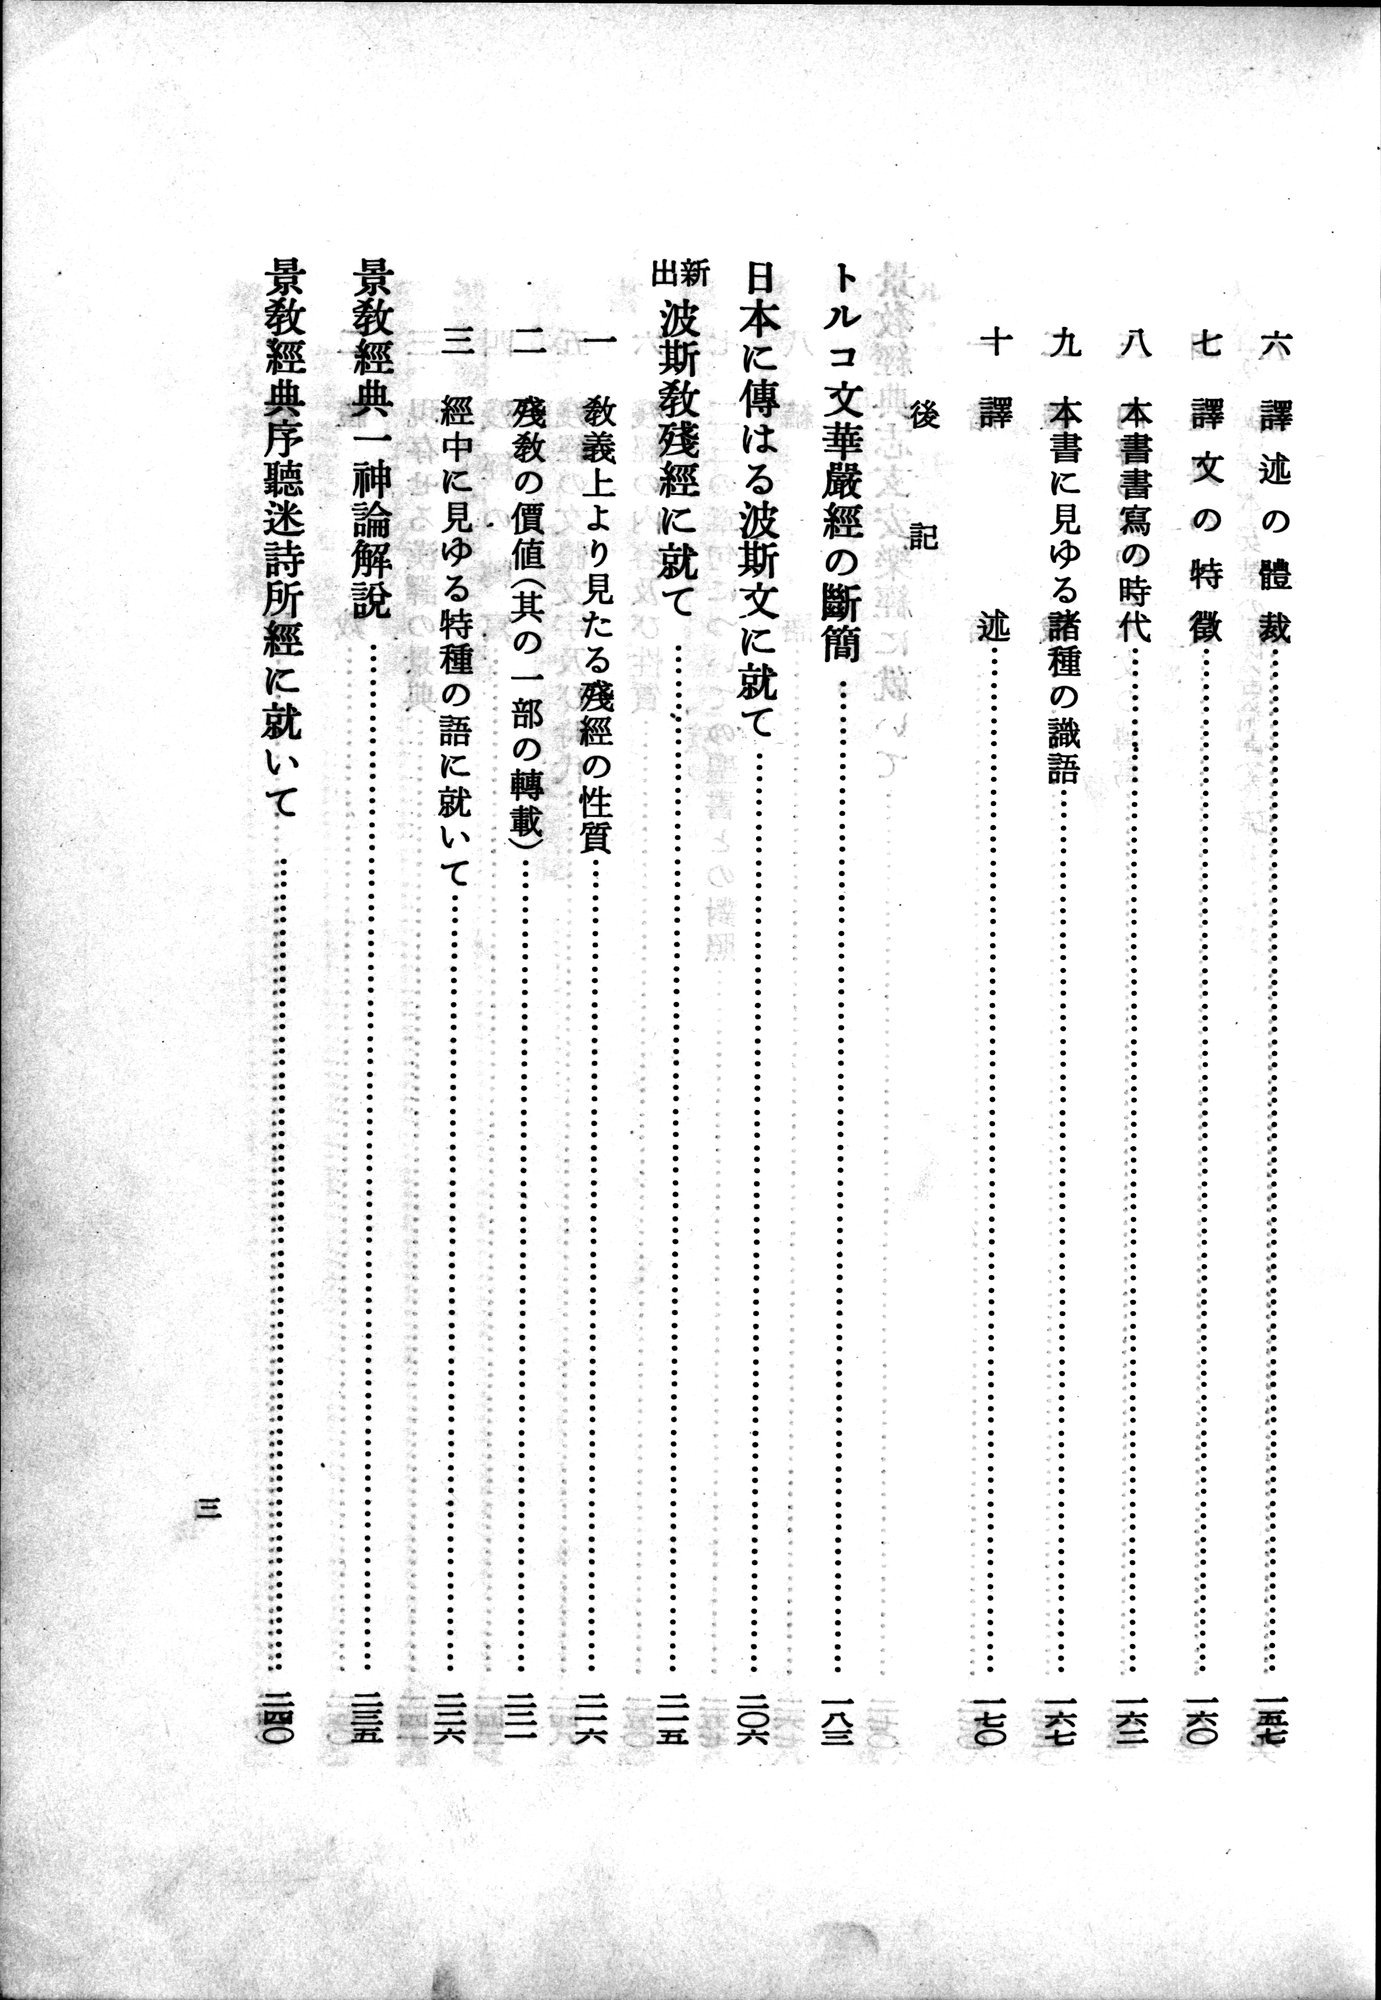 羽田博士史学論文集 : vol.2 / Page 41 (Grayscale High Resolution Image)